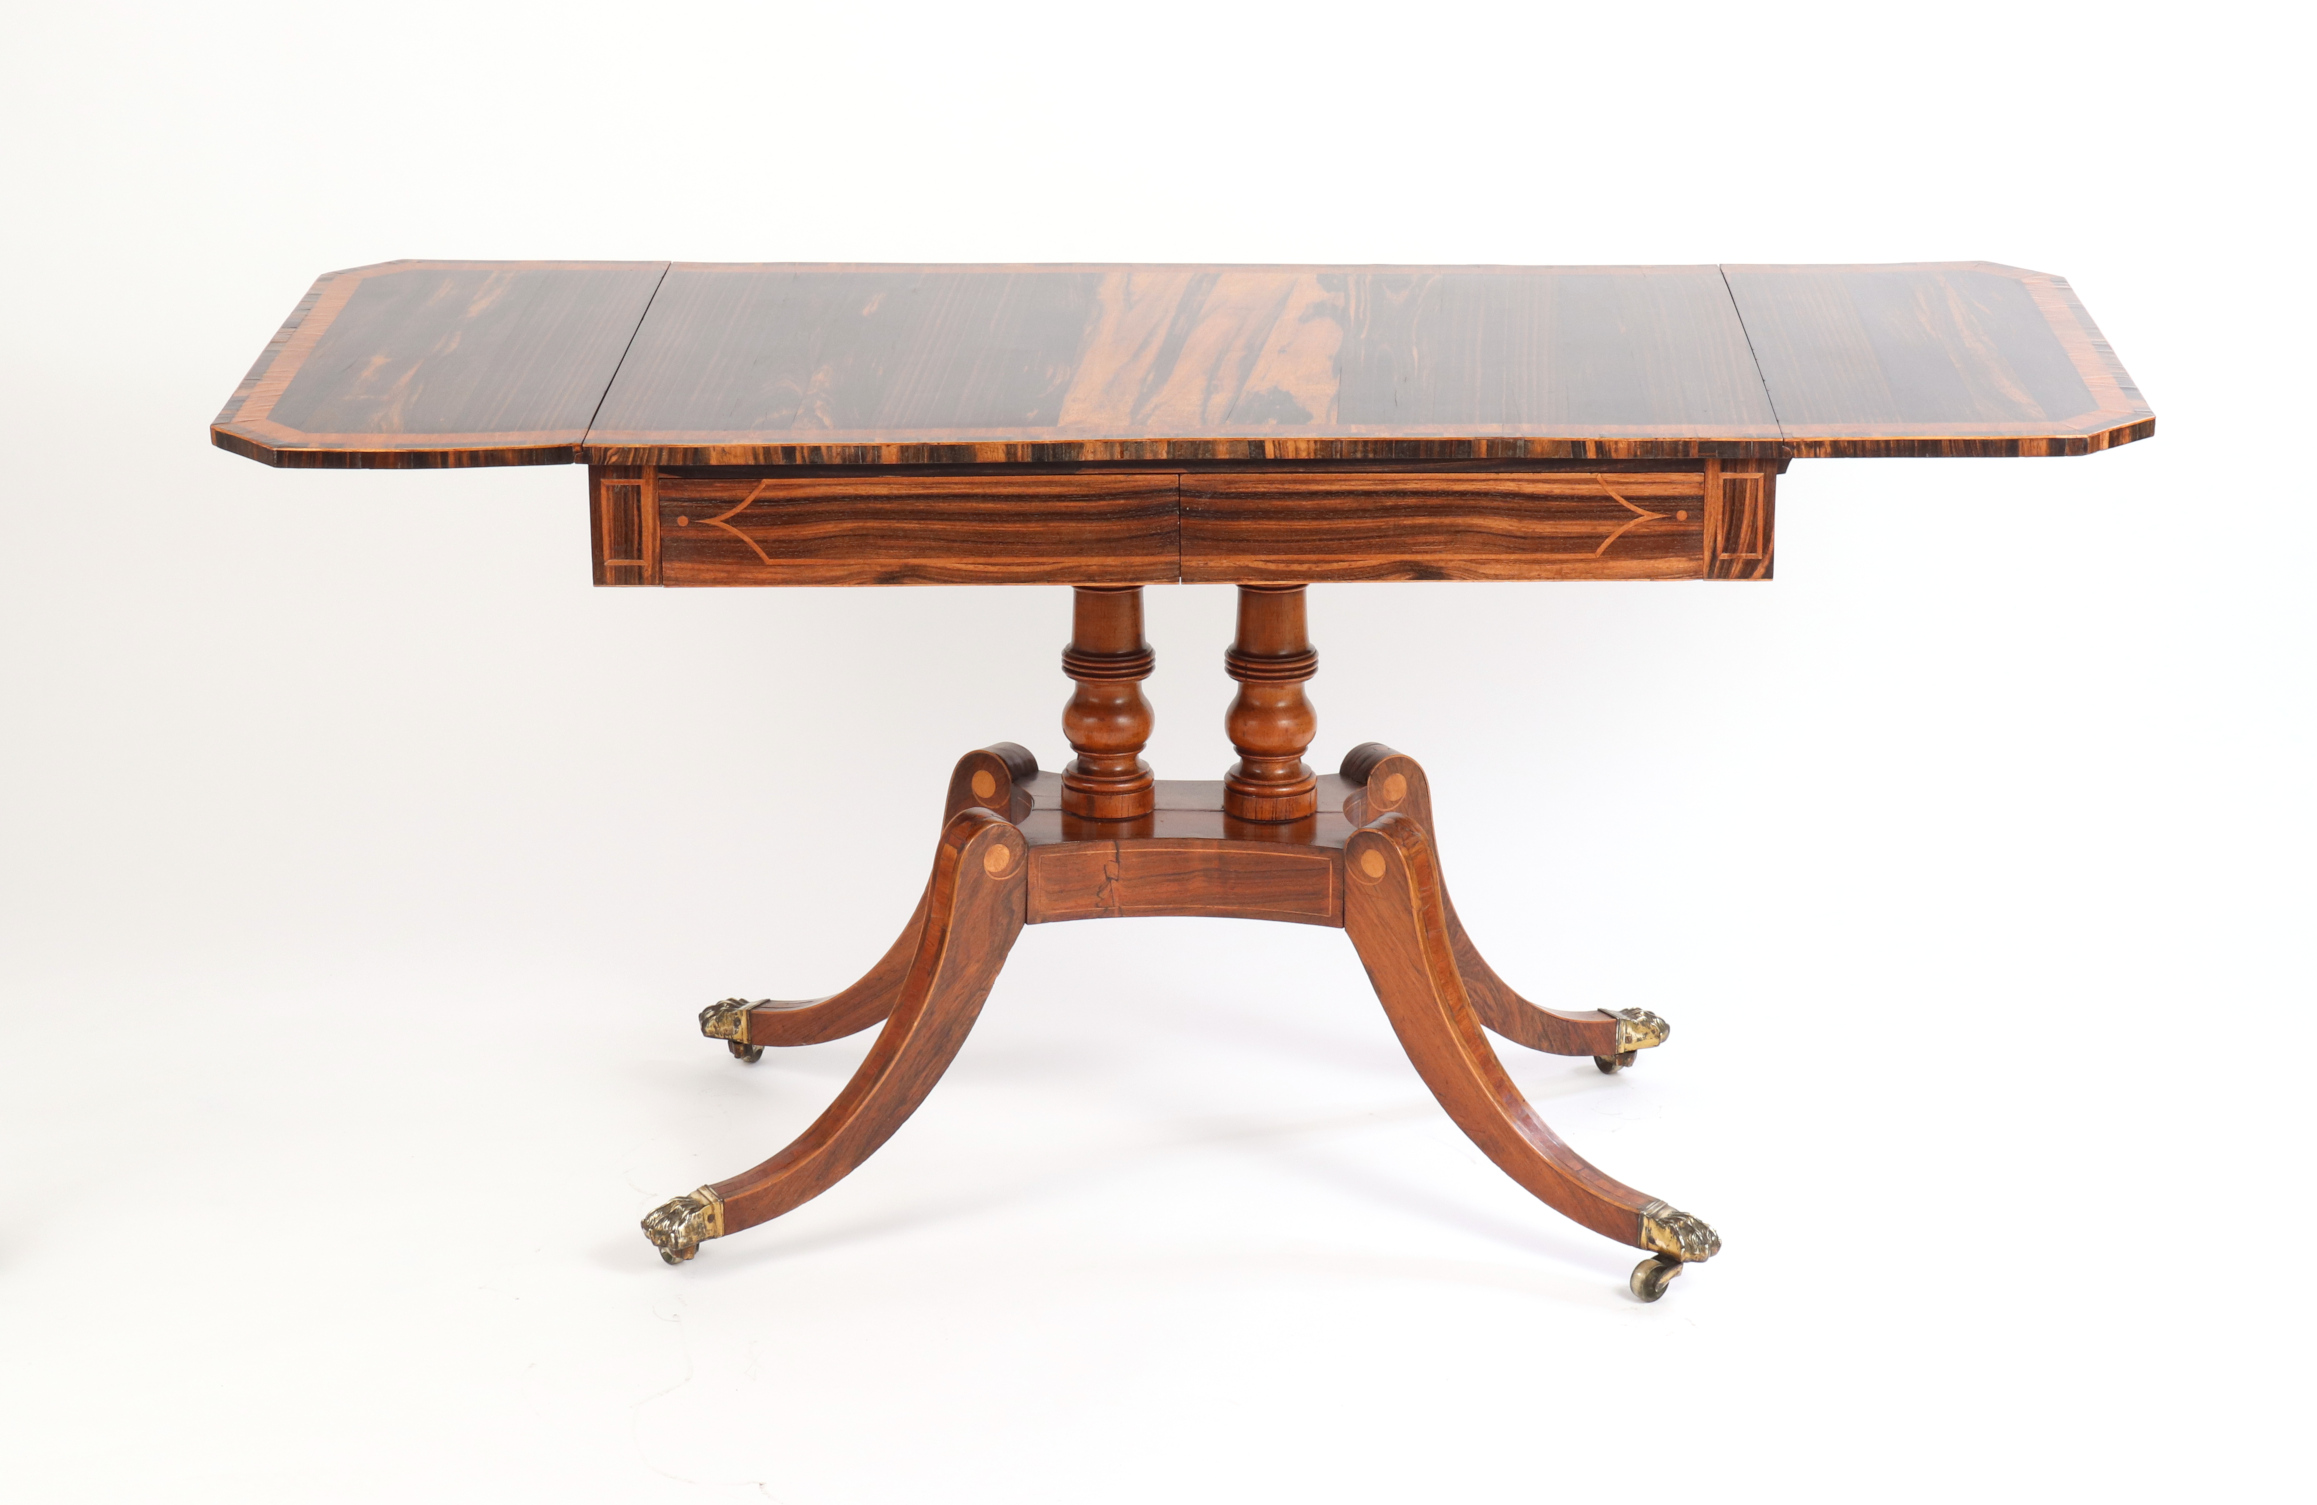 Regency Calamander and Rosewood Sofa Table, c. 1810-20